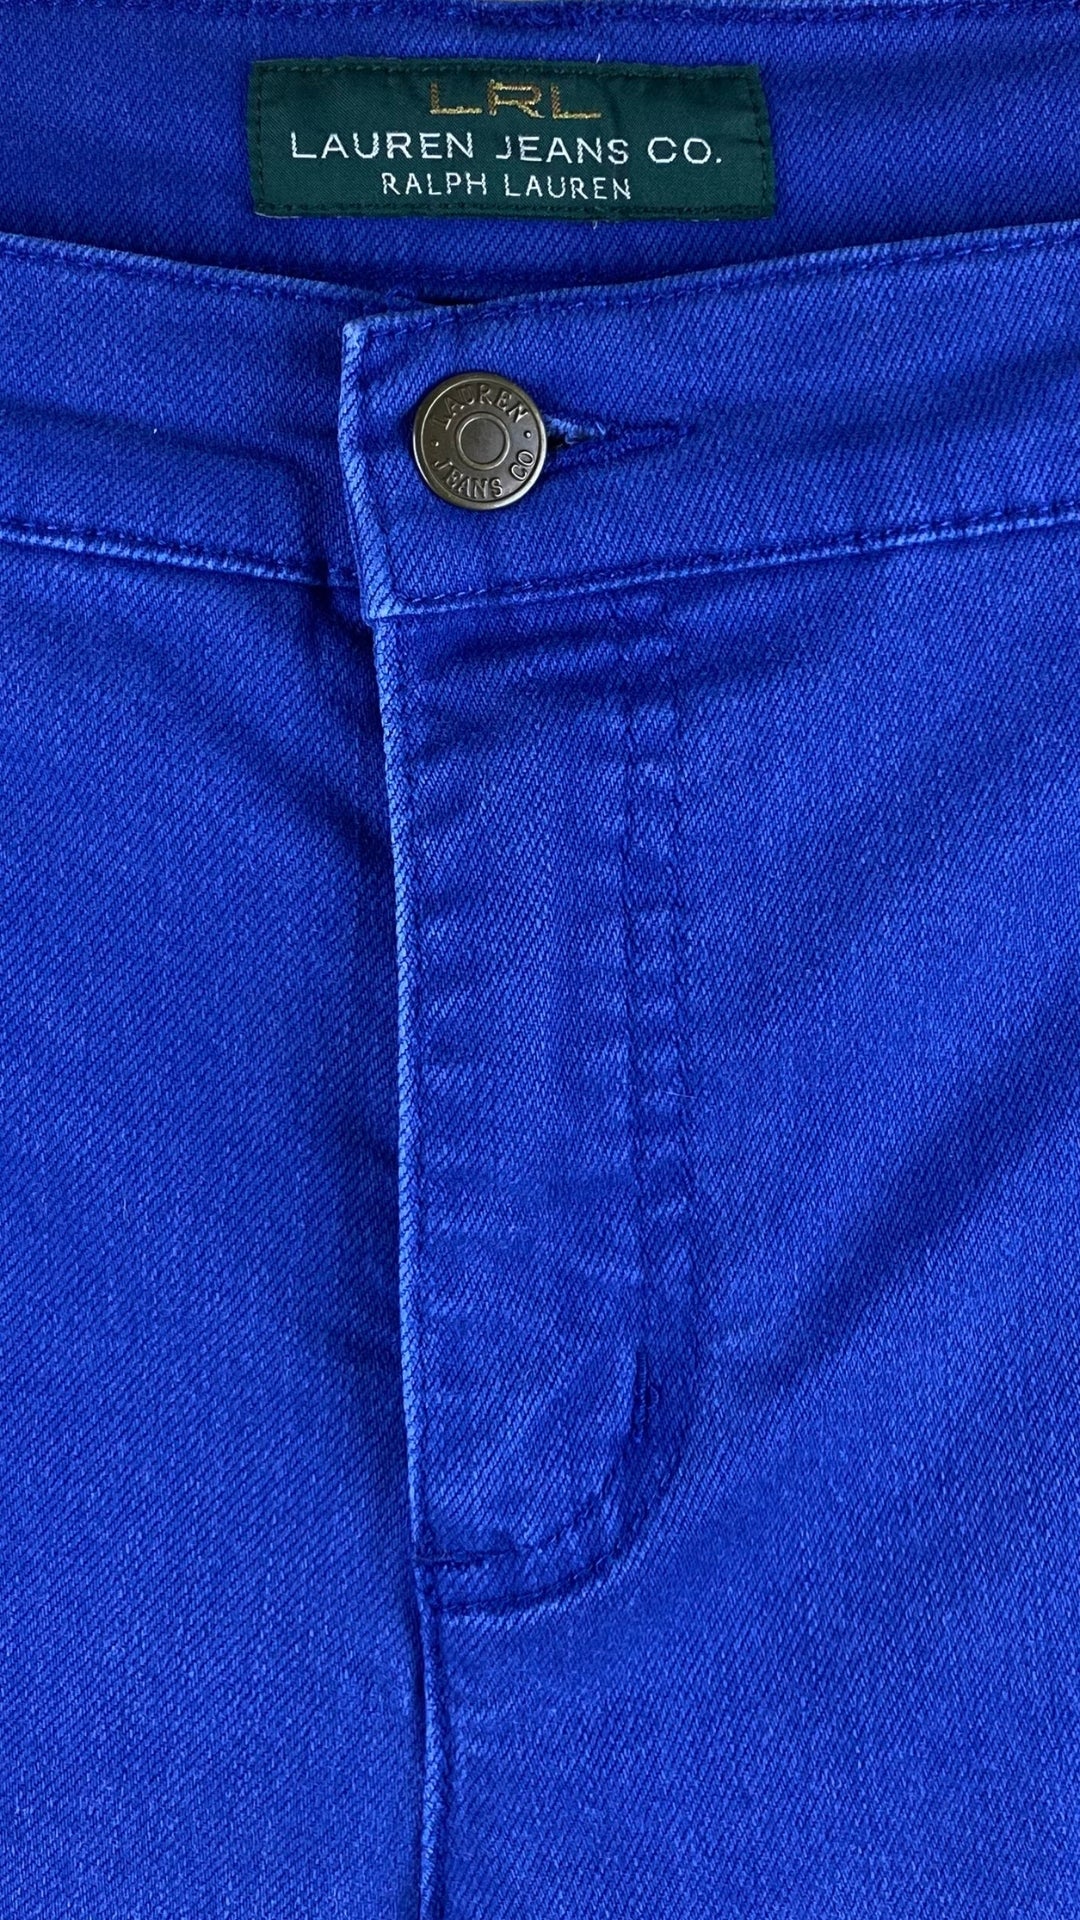 Pantalon en denim bleu royal Lauren Ralph Lauren, taille 14. Vue de la taille.